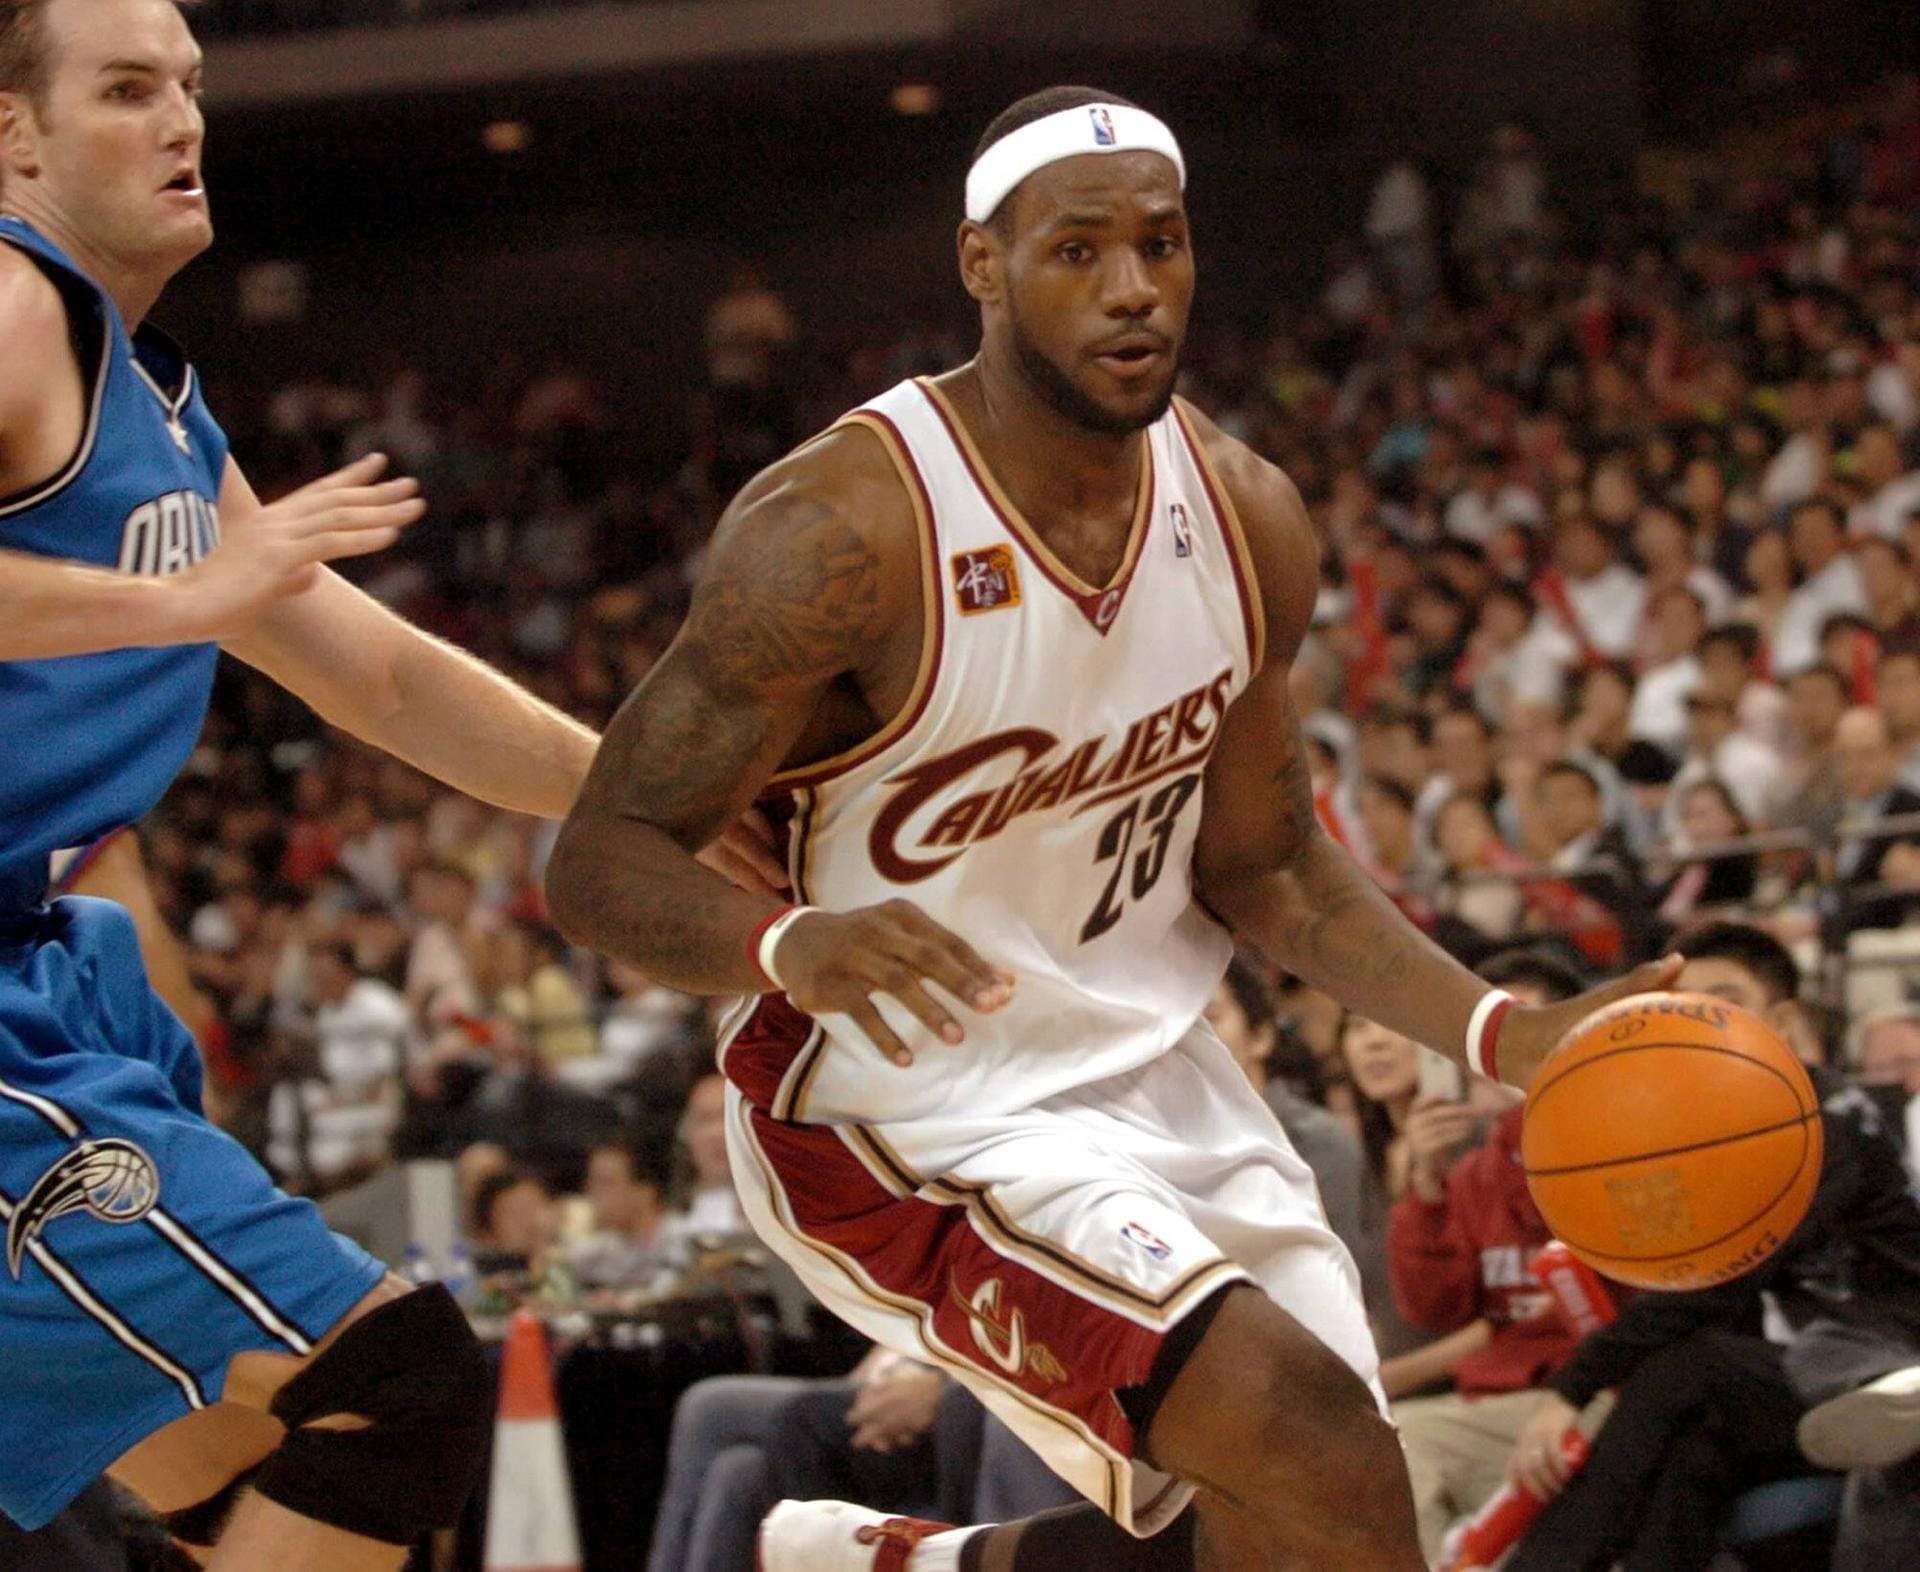 6. Platz: Basketballspieler LeBron James von den Cleveland Cavaliers hat 85,5 Millonen Dollar eingenommen.